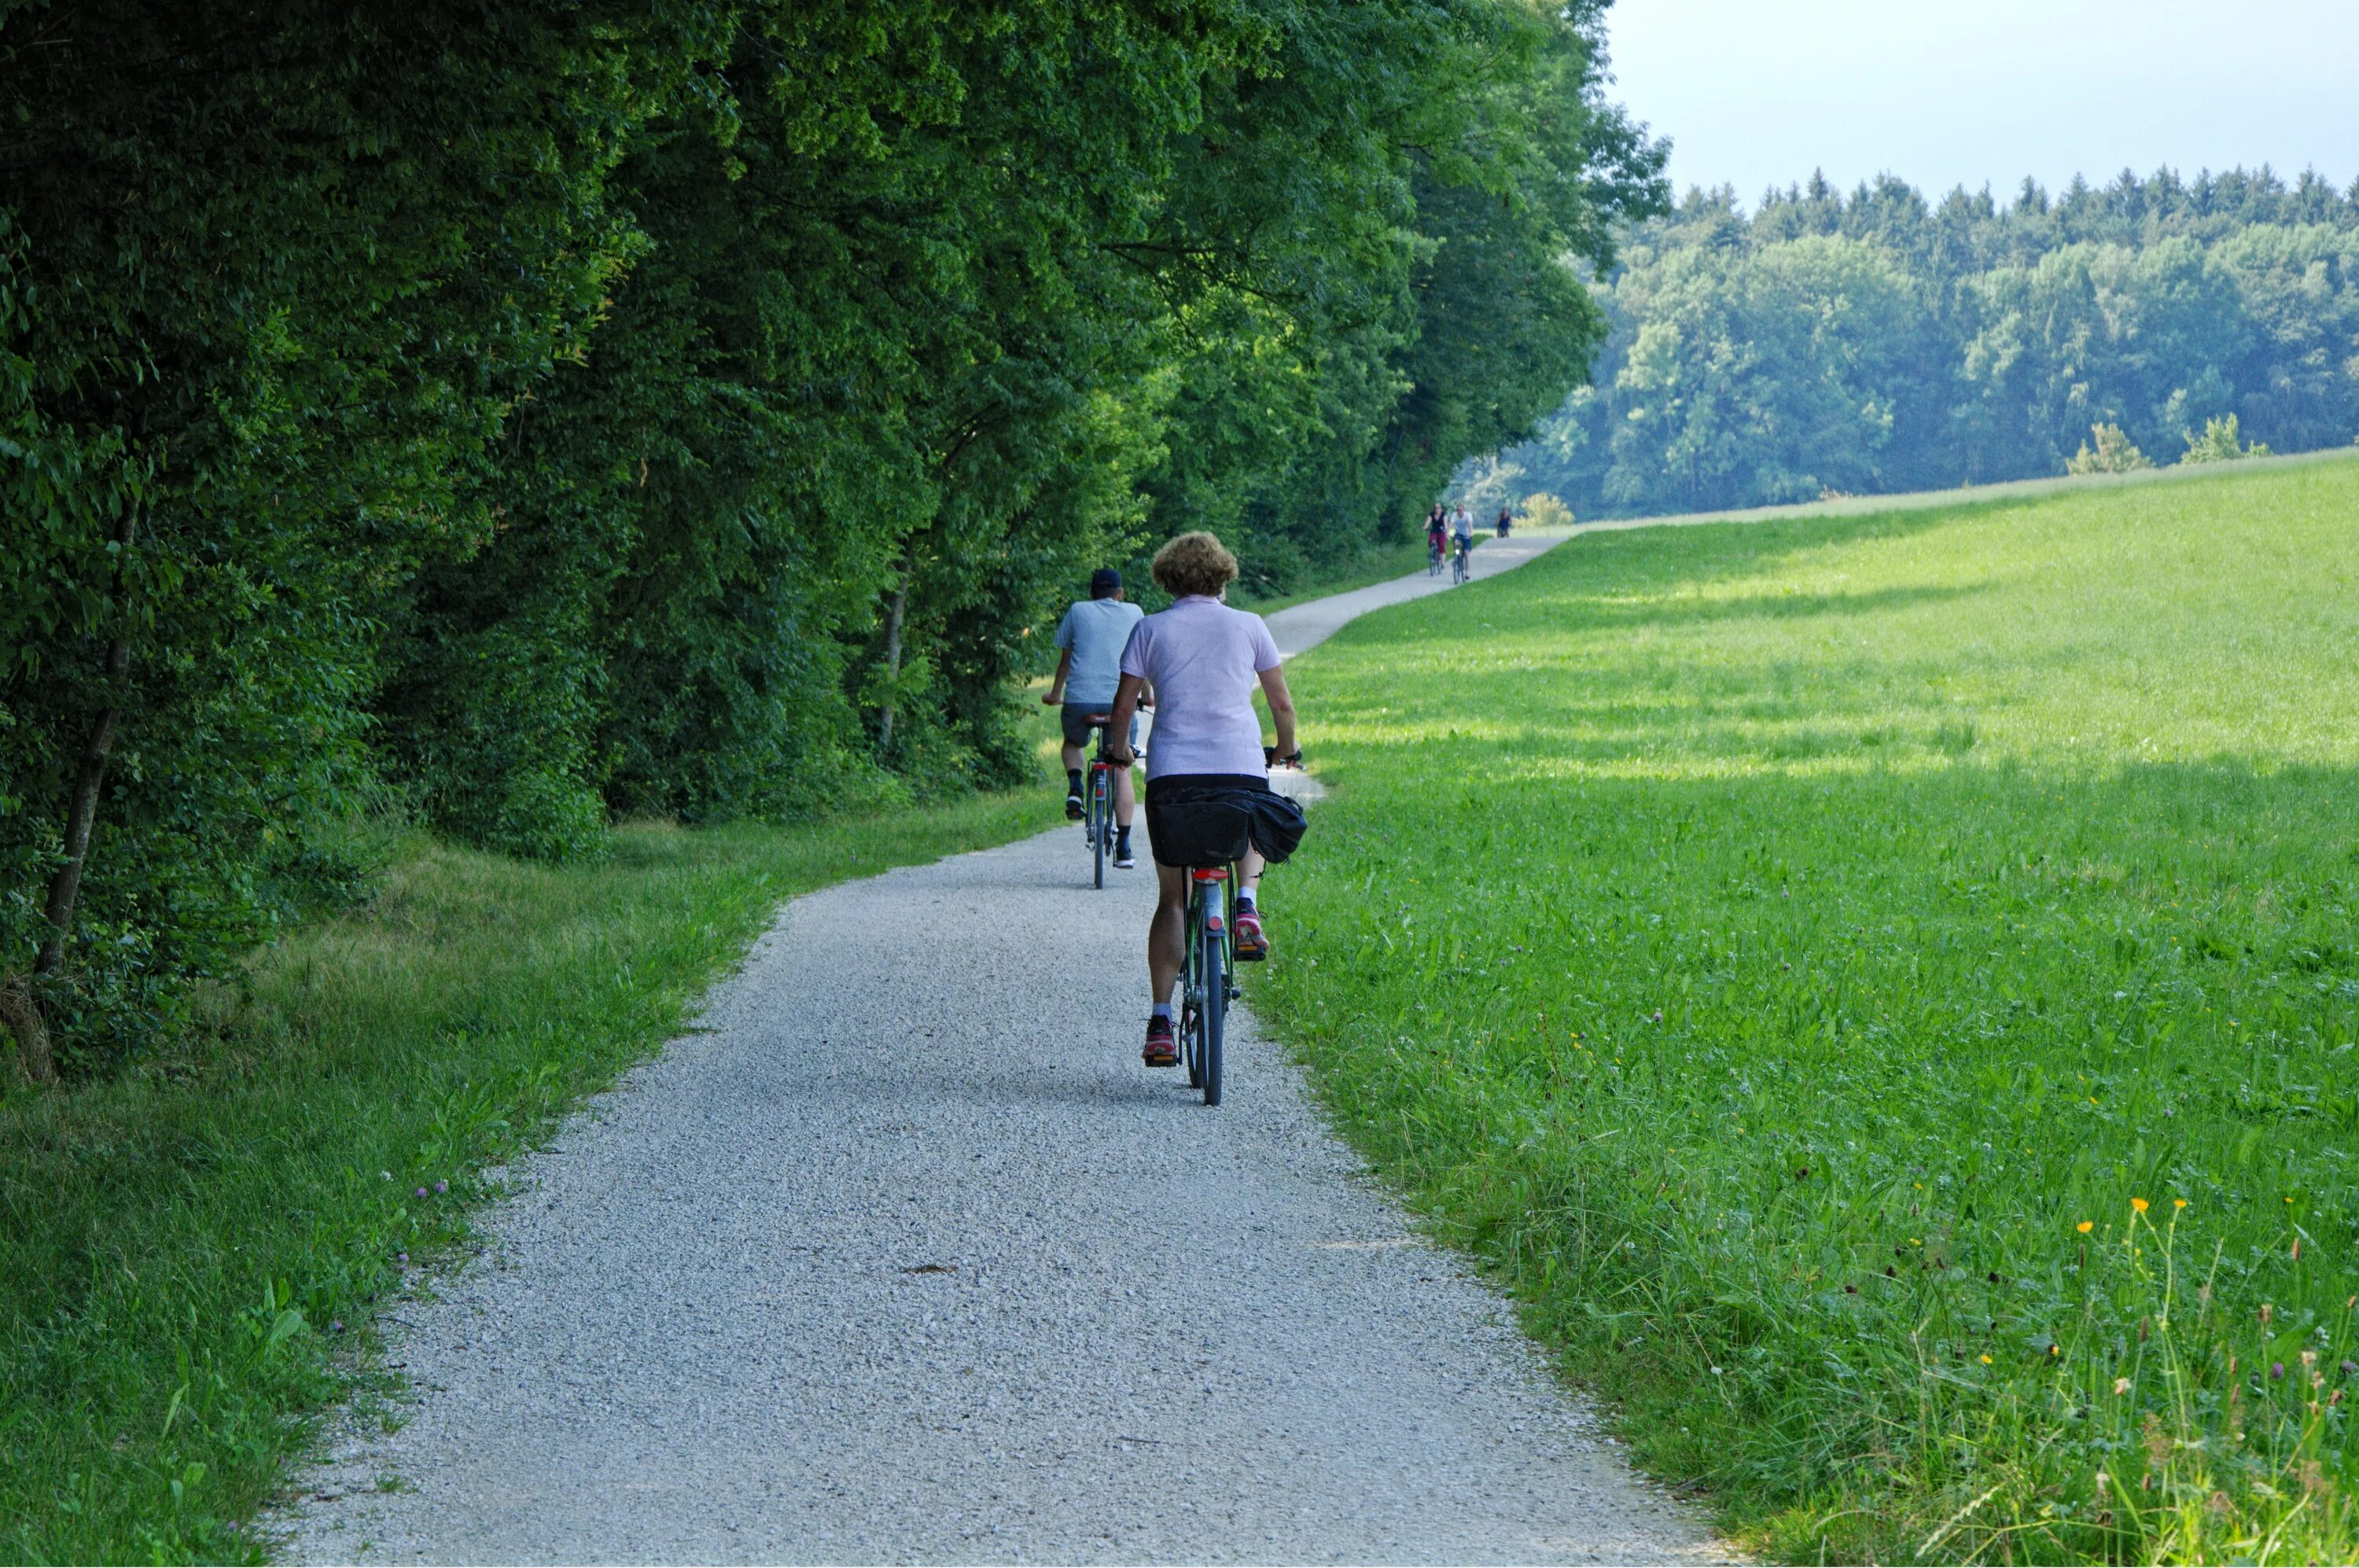 Велосипедная дорожка в парке. Велосипедная дорожка в лесу. Велосипед на велодорожке. Велосипед на тропинке.